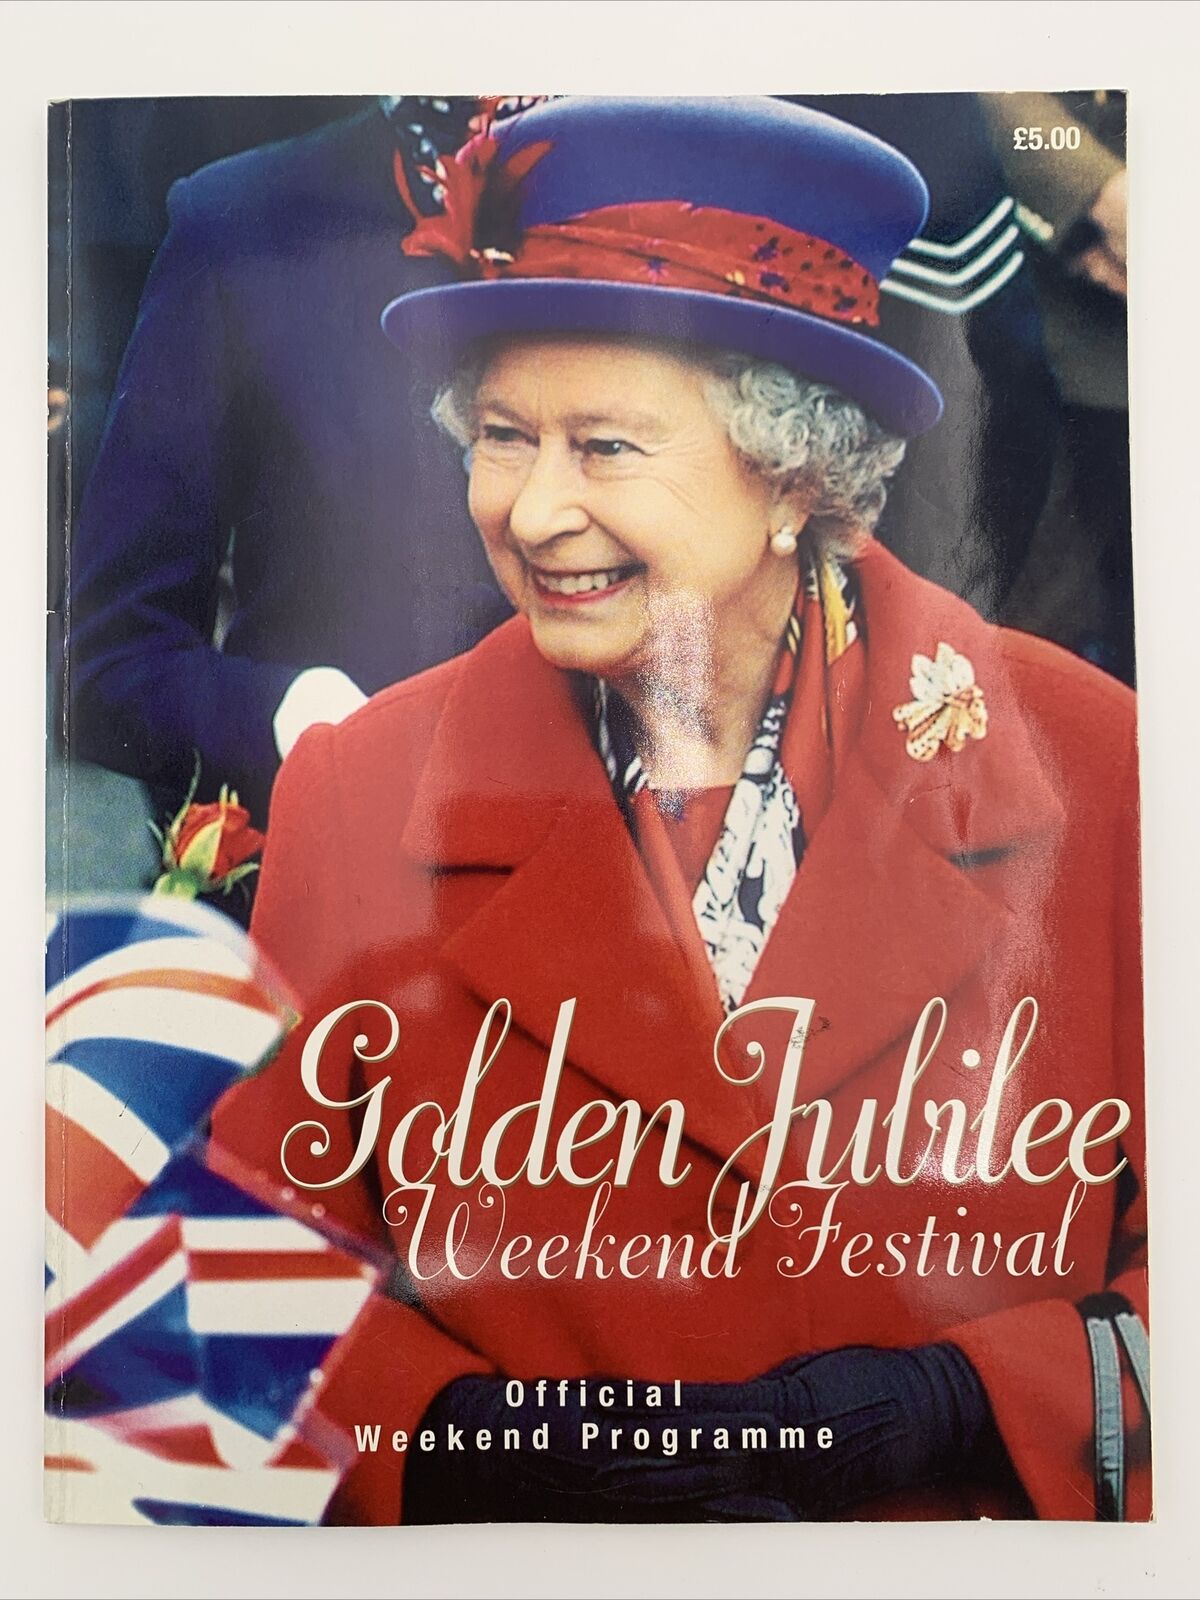 Queen Elizabeth Golden Jubilee Weekend Festival Official Weekend Programme 2002